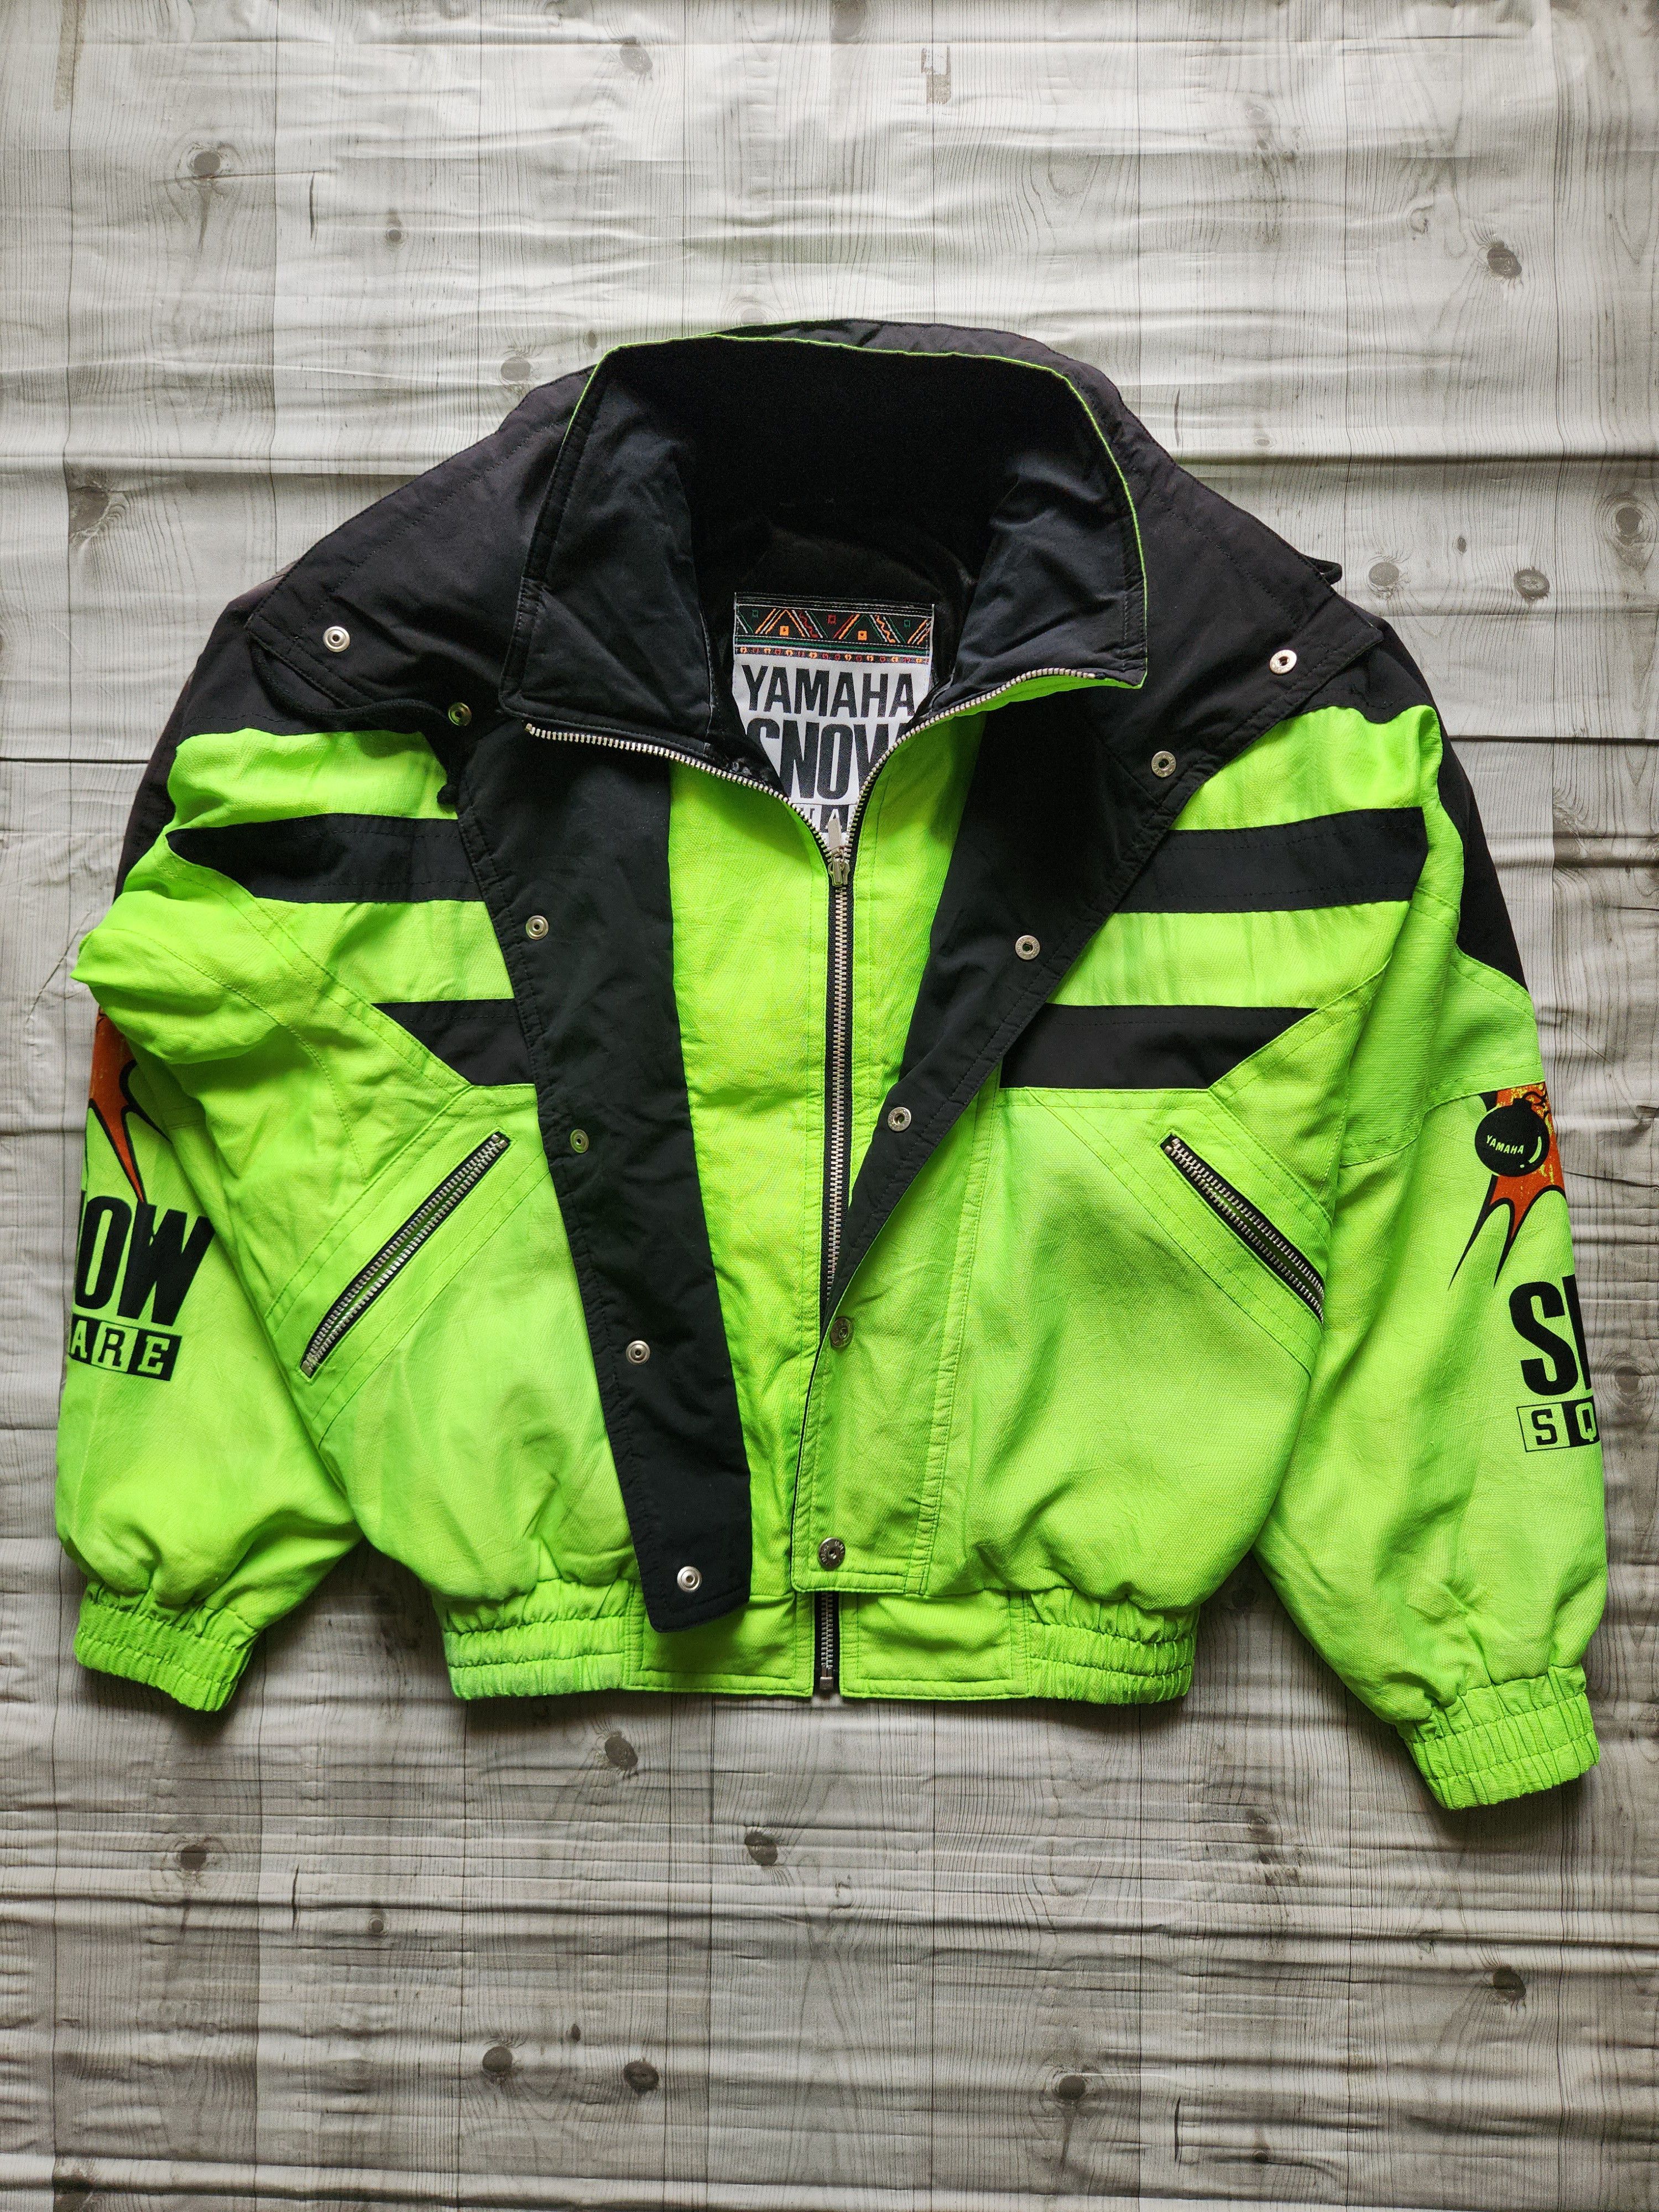 Yamaha - Yahama Snow Square Ski Jacket - 3